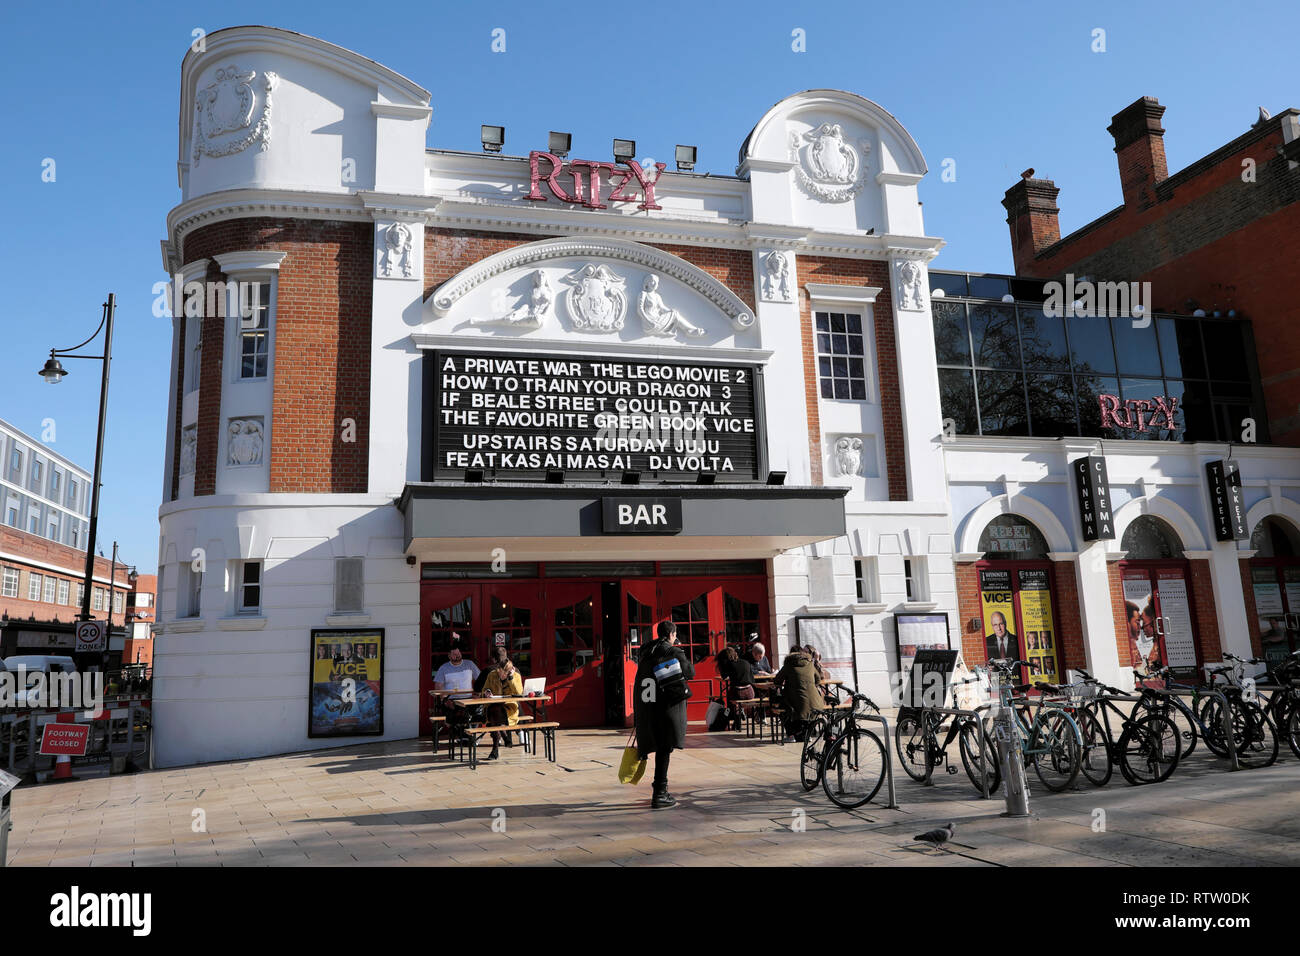 Ritzy Cinema and Bar vue extérieure montrant des films à Brixton South London Angleterre Royaume-Uni Grande-Bretagne Europe KATHY DEWITT Banque D'Images